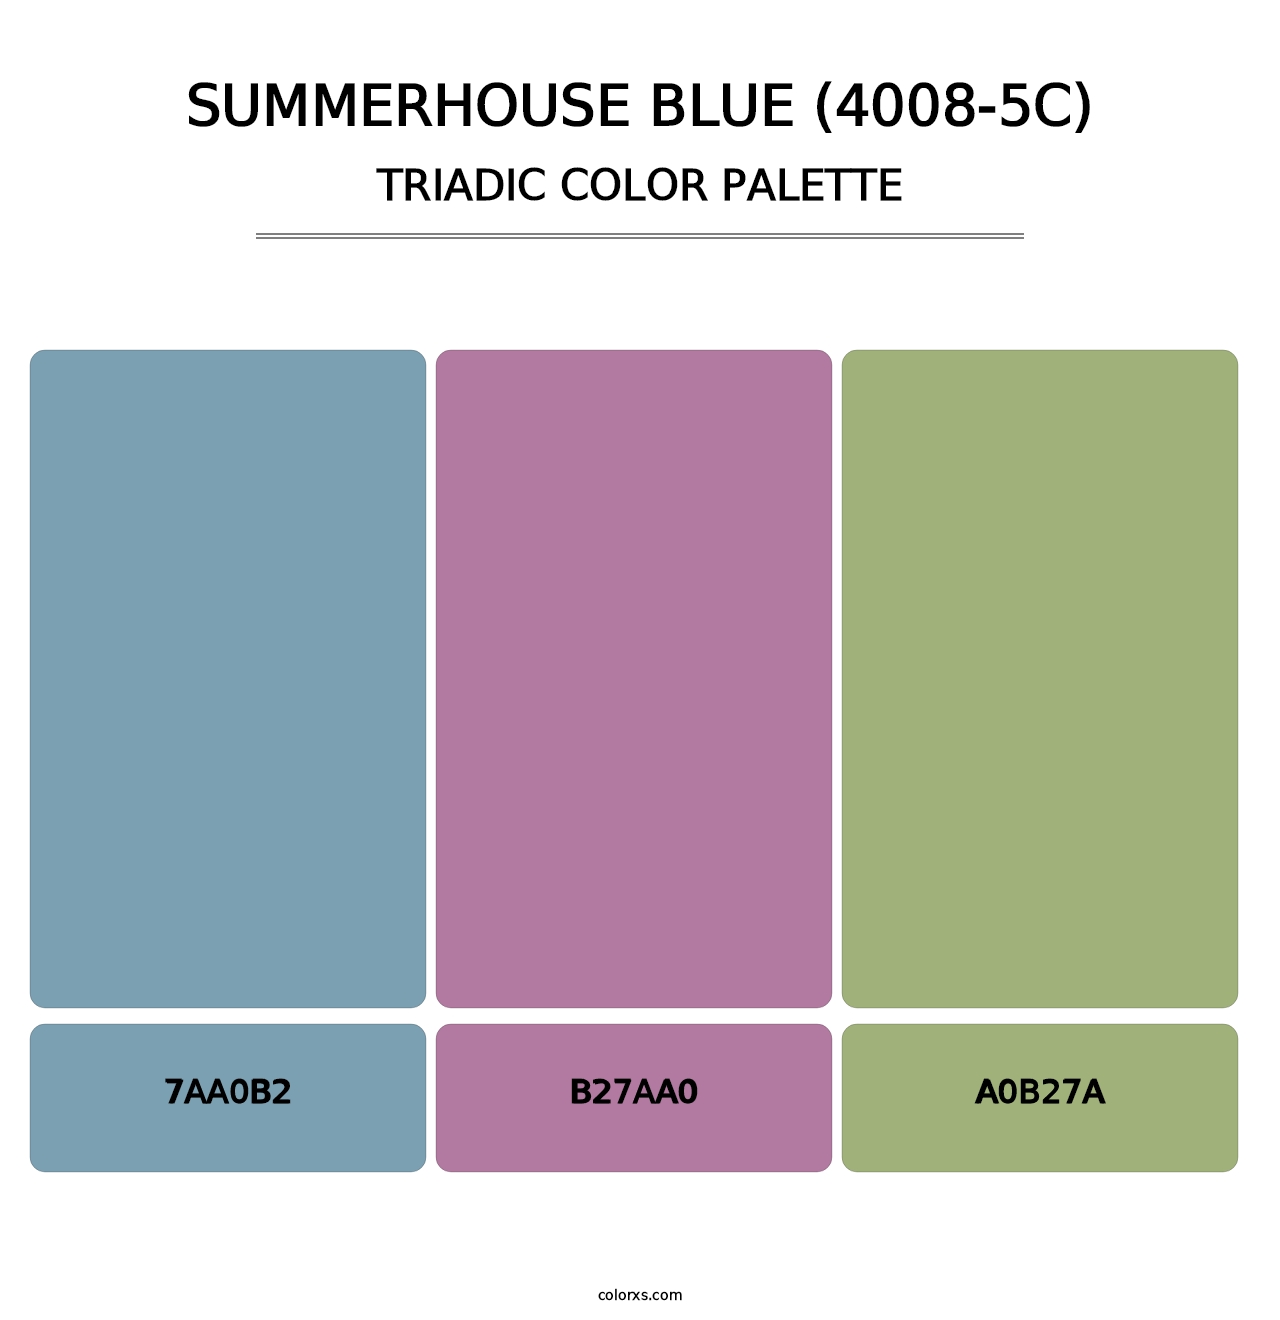 Summerhouse Blue (4008-5C) - Triadic Color Palette